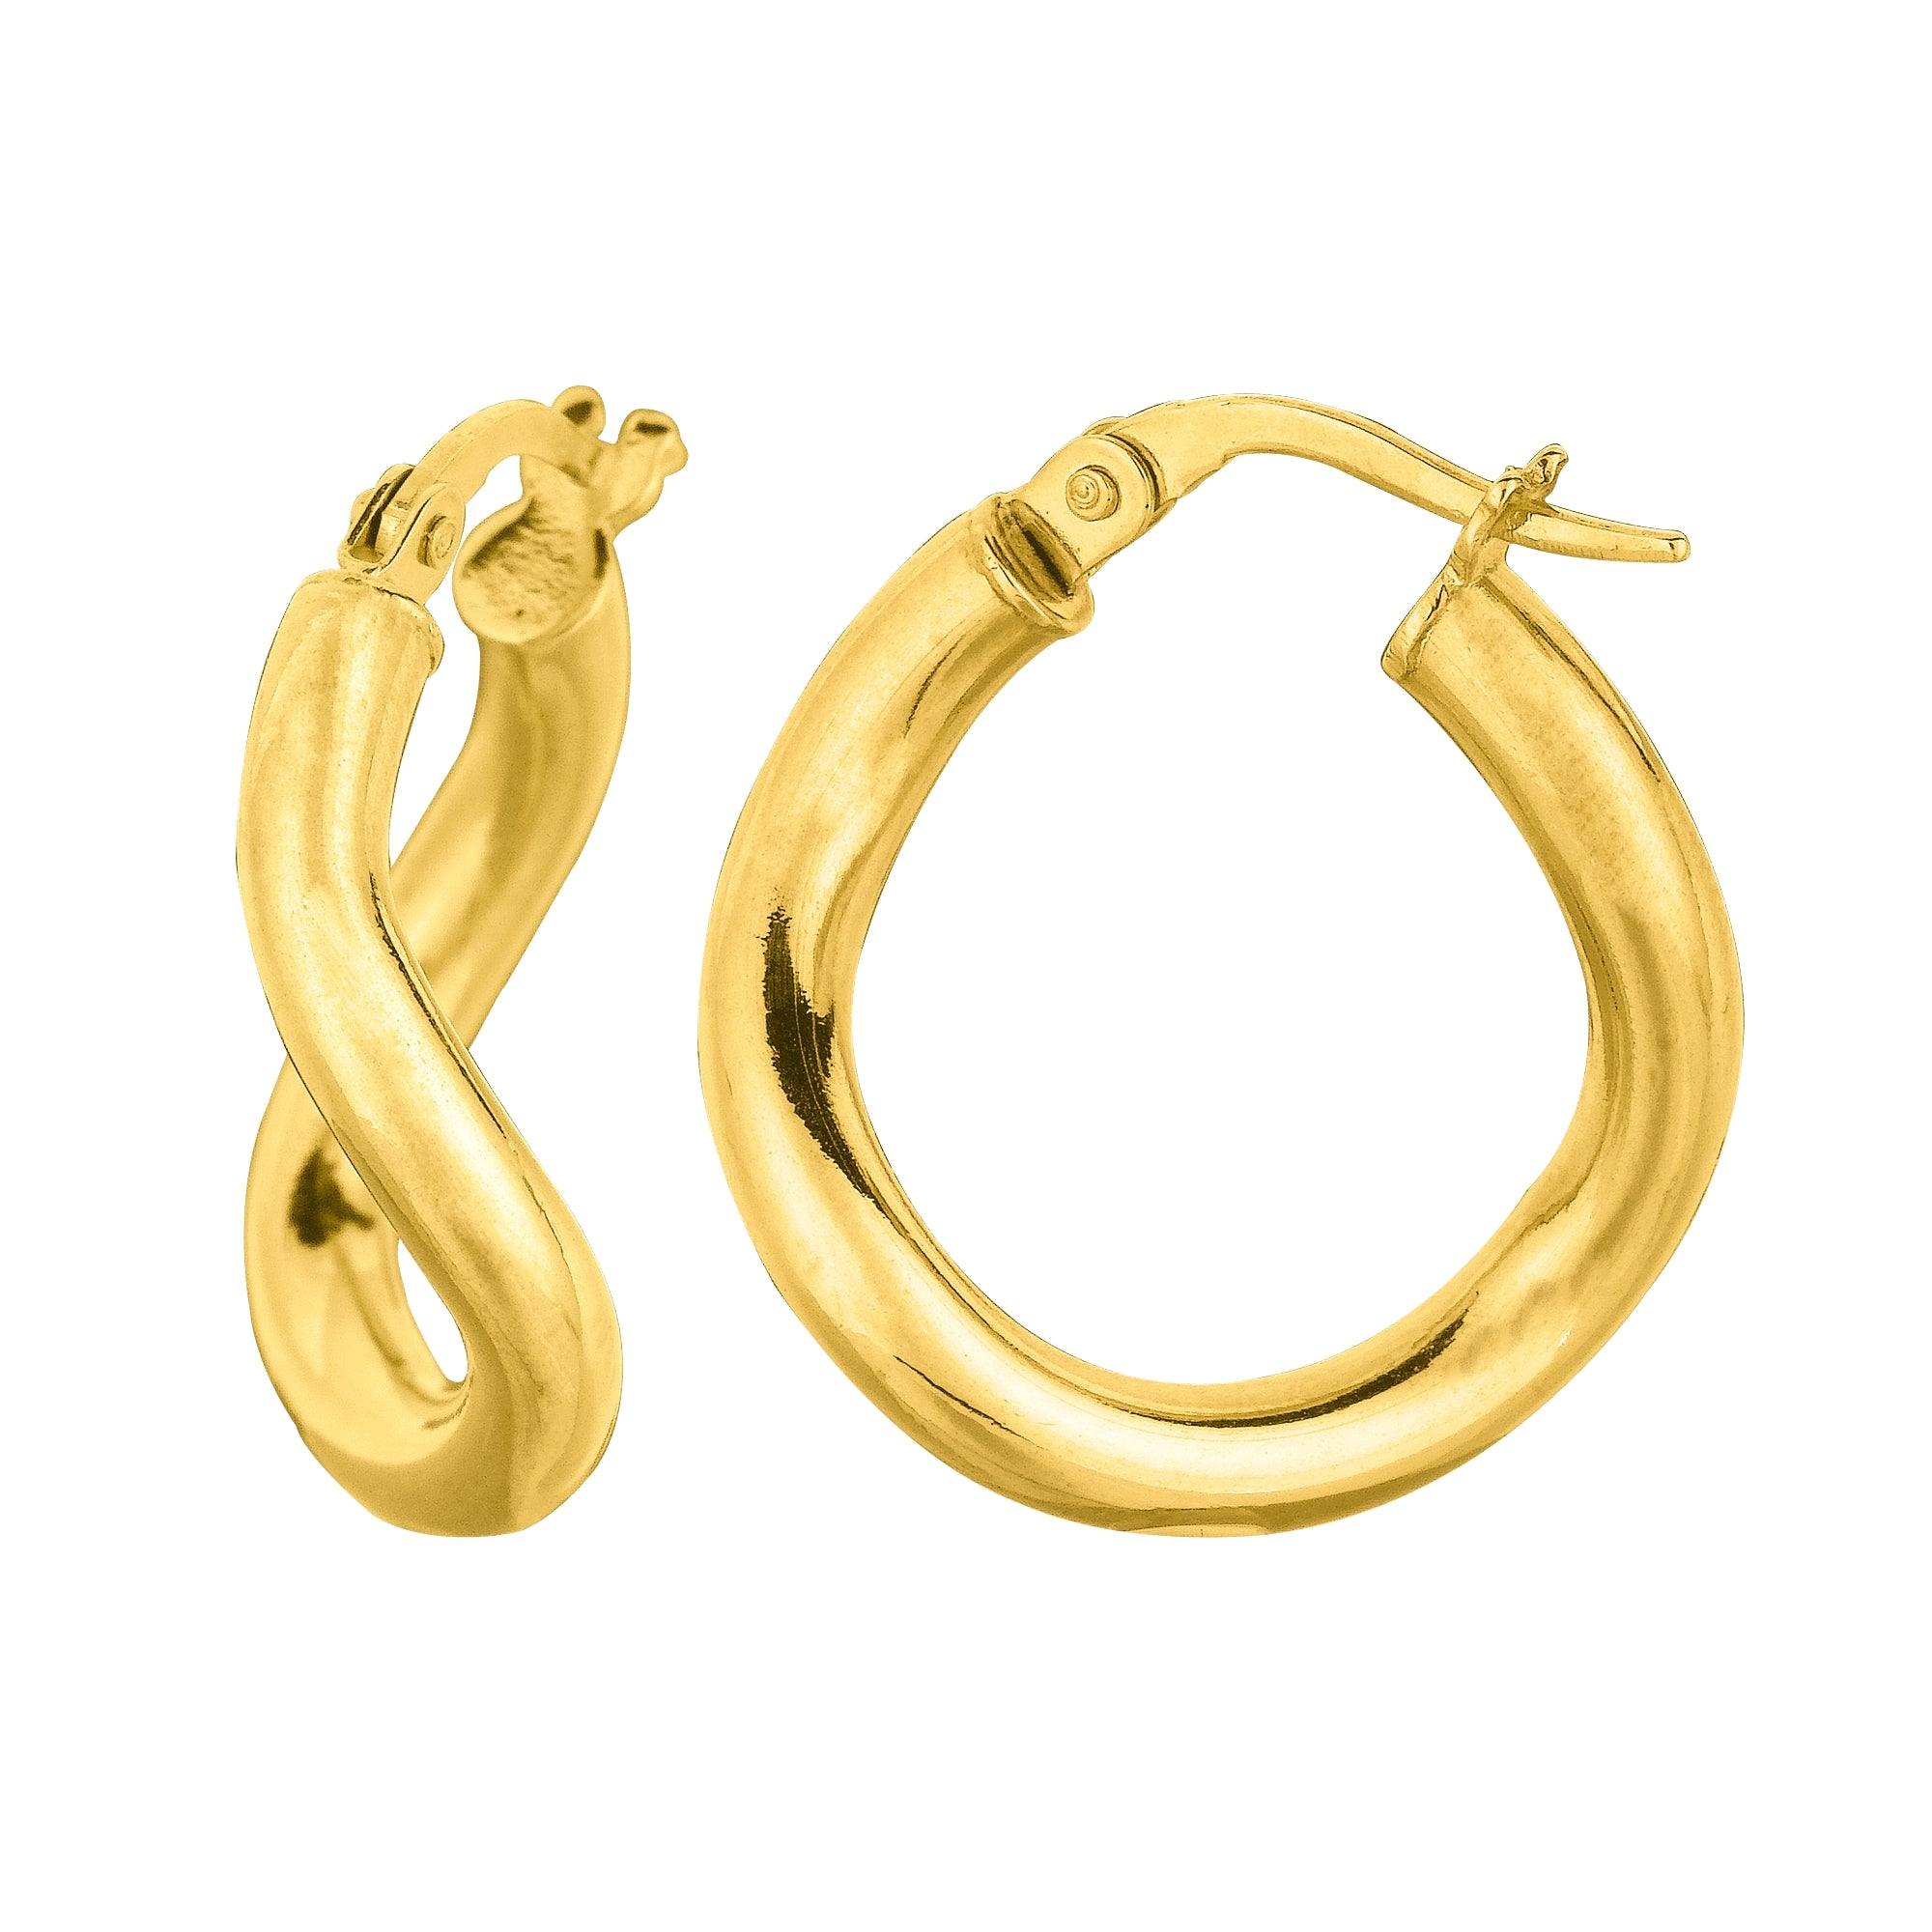 True Gold 14K Hoop Earrings, Yellow